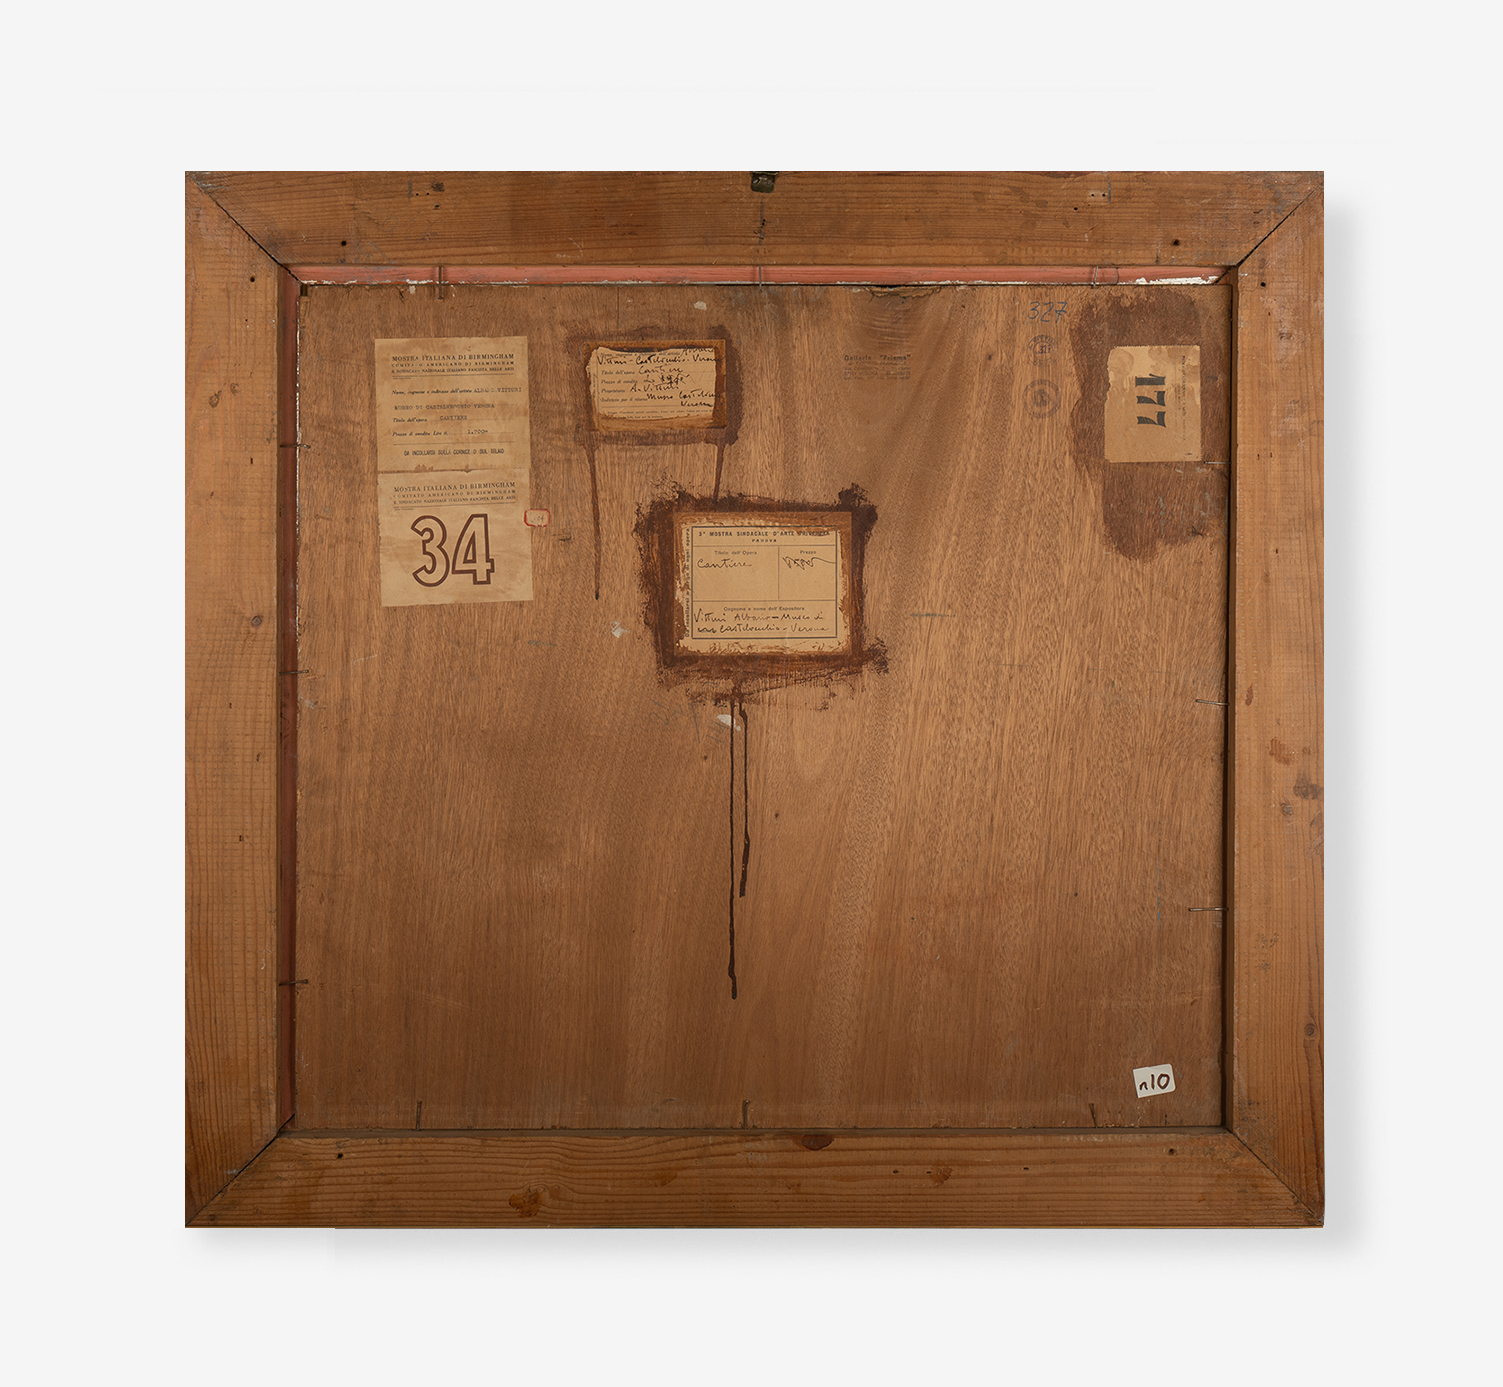 Cantiere-1926-olio-su-tavola-65×70-cm-retro-sito-OK